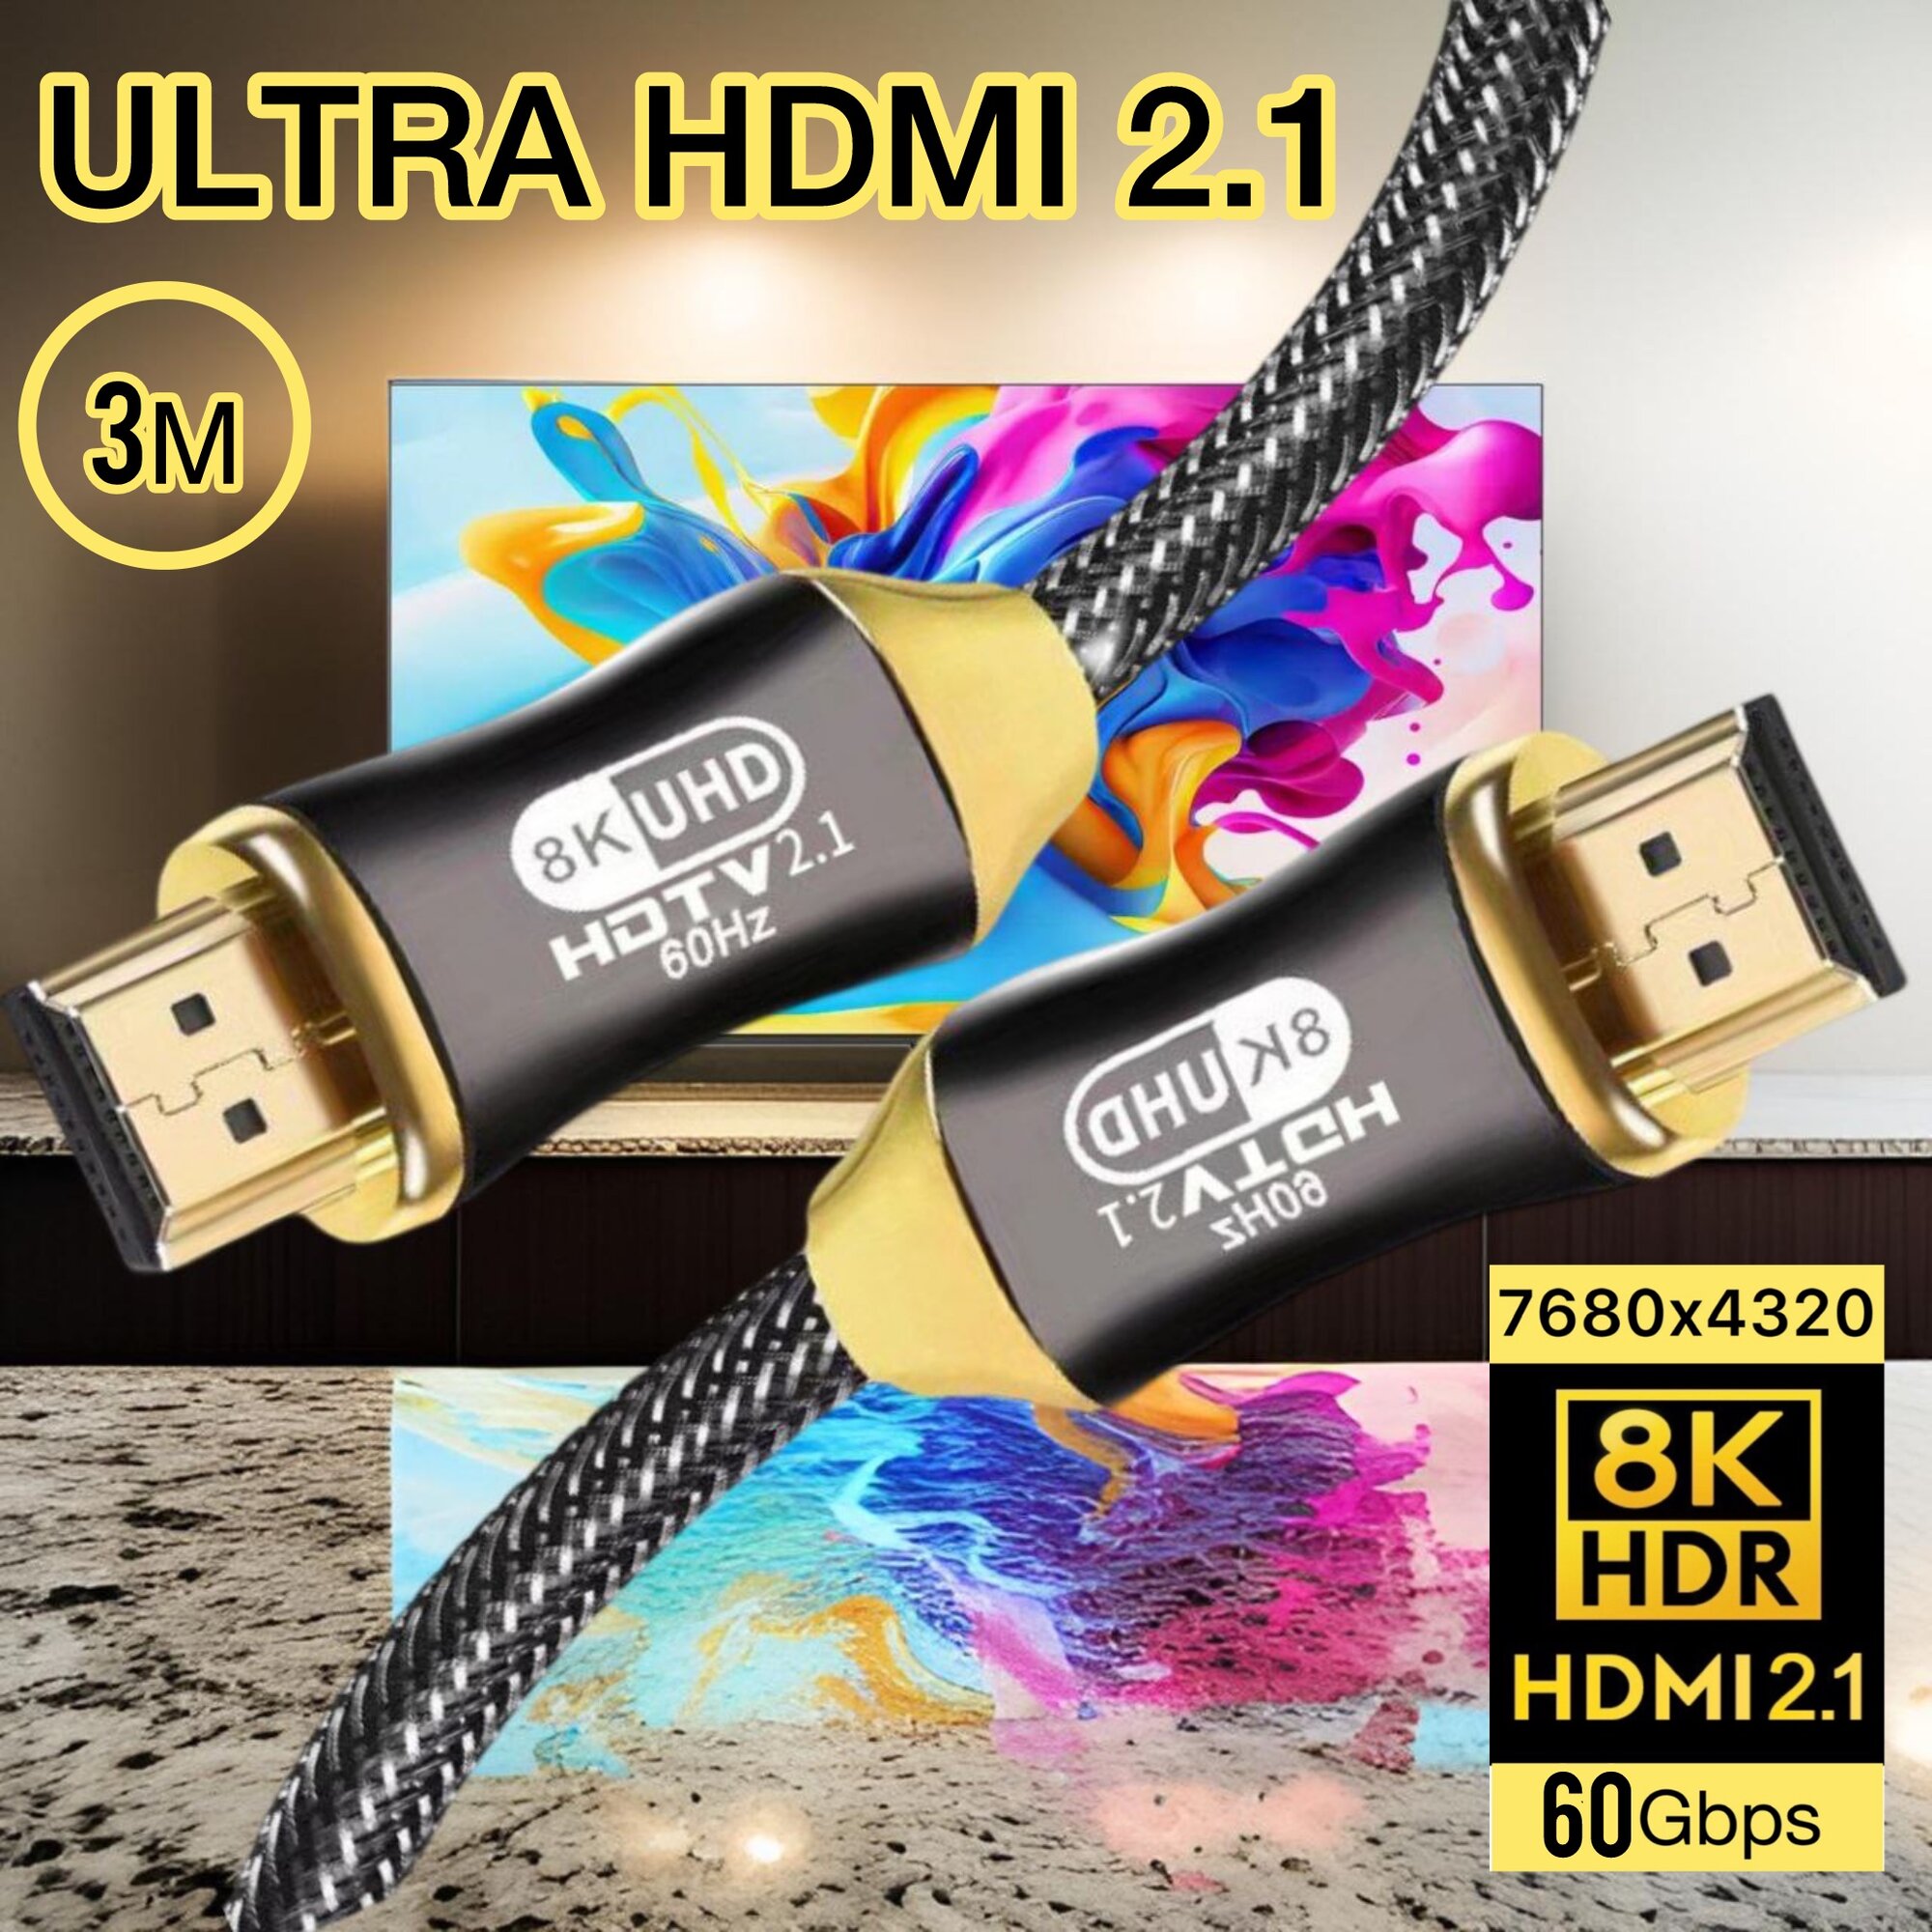 Кабель HDMI 2.1 4K Ultra HD 60Hz AOC / Суперсовременный для подключения Smart TV, Apple TV, XBOX, Series X, PS5 / черный / 3 метра